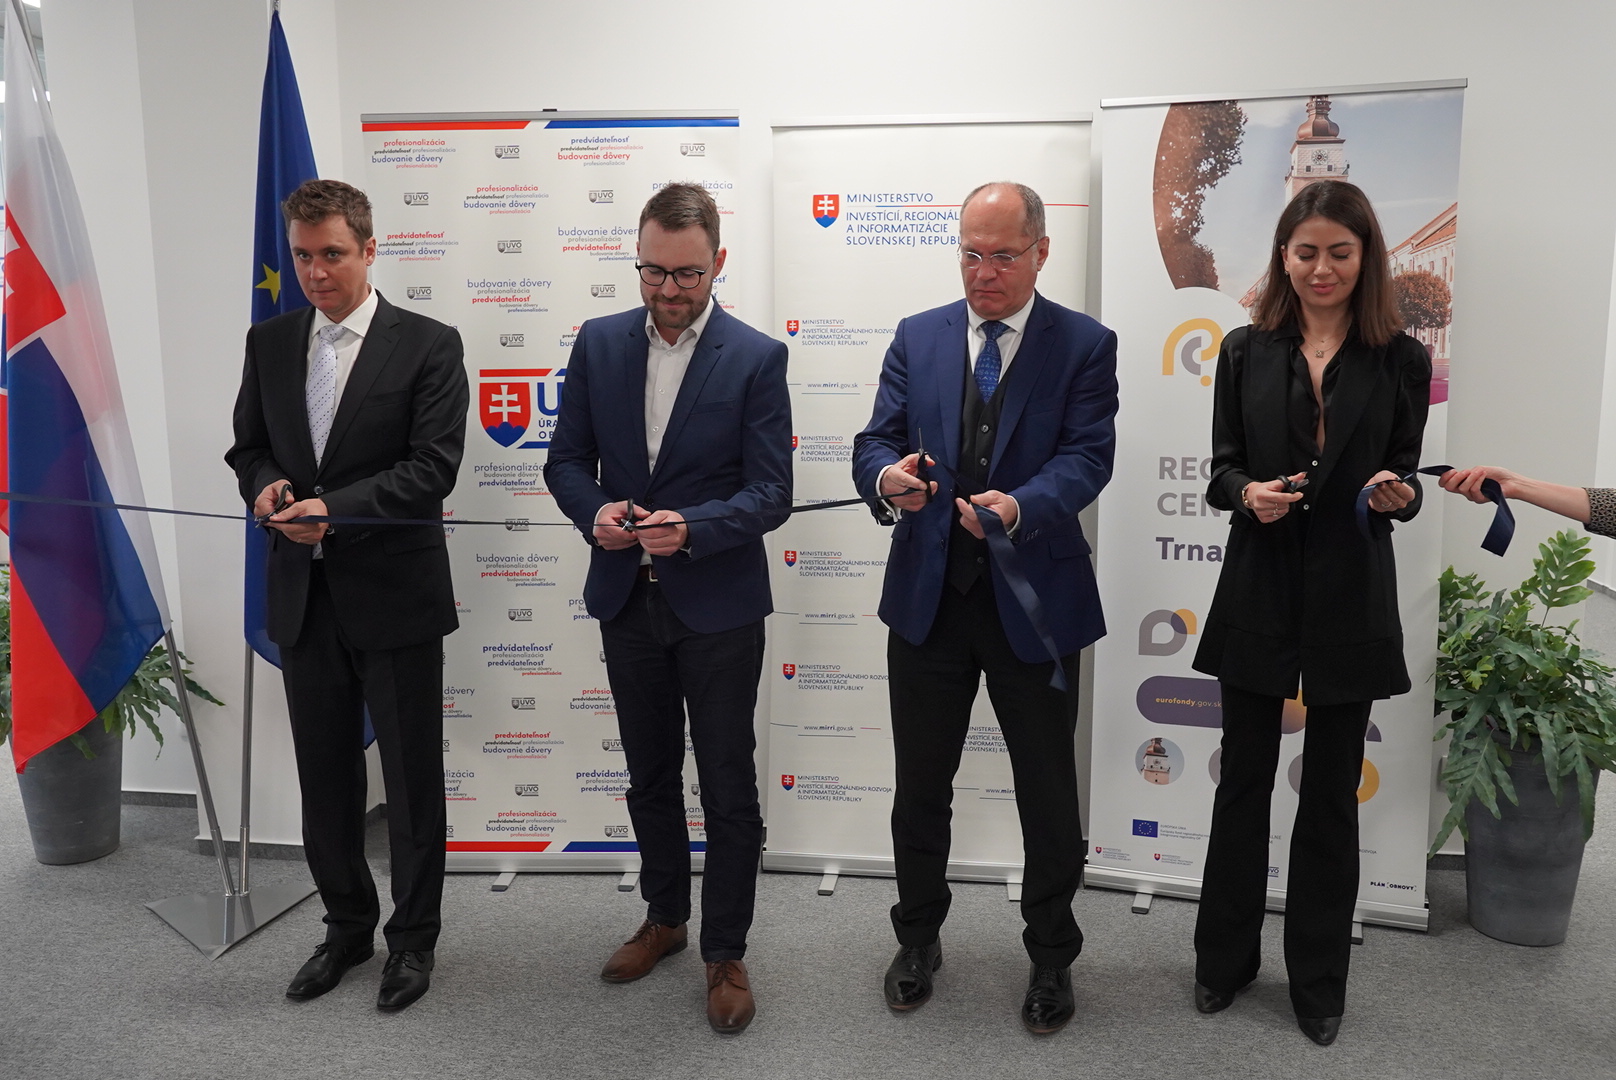 Štátny tajomník Velič: Počúvame ľudí – novootvorené Regionálne centrum v Trnave pomôže regiónu pri čerpaní eurofondov a dotácií